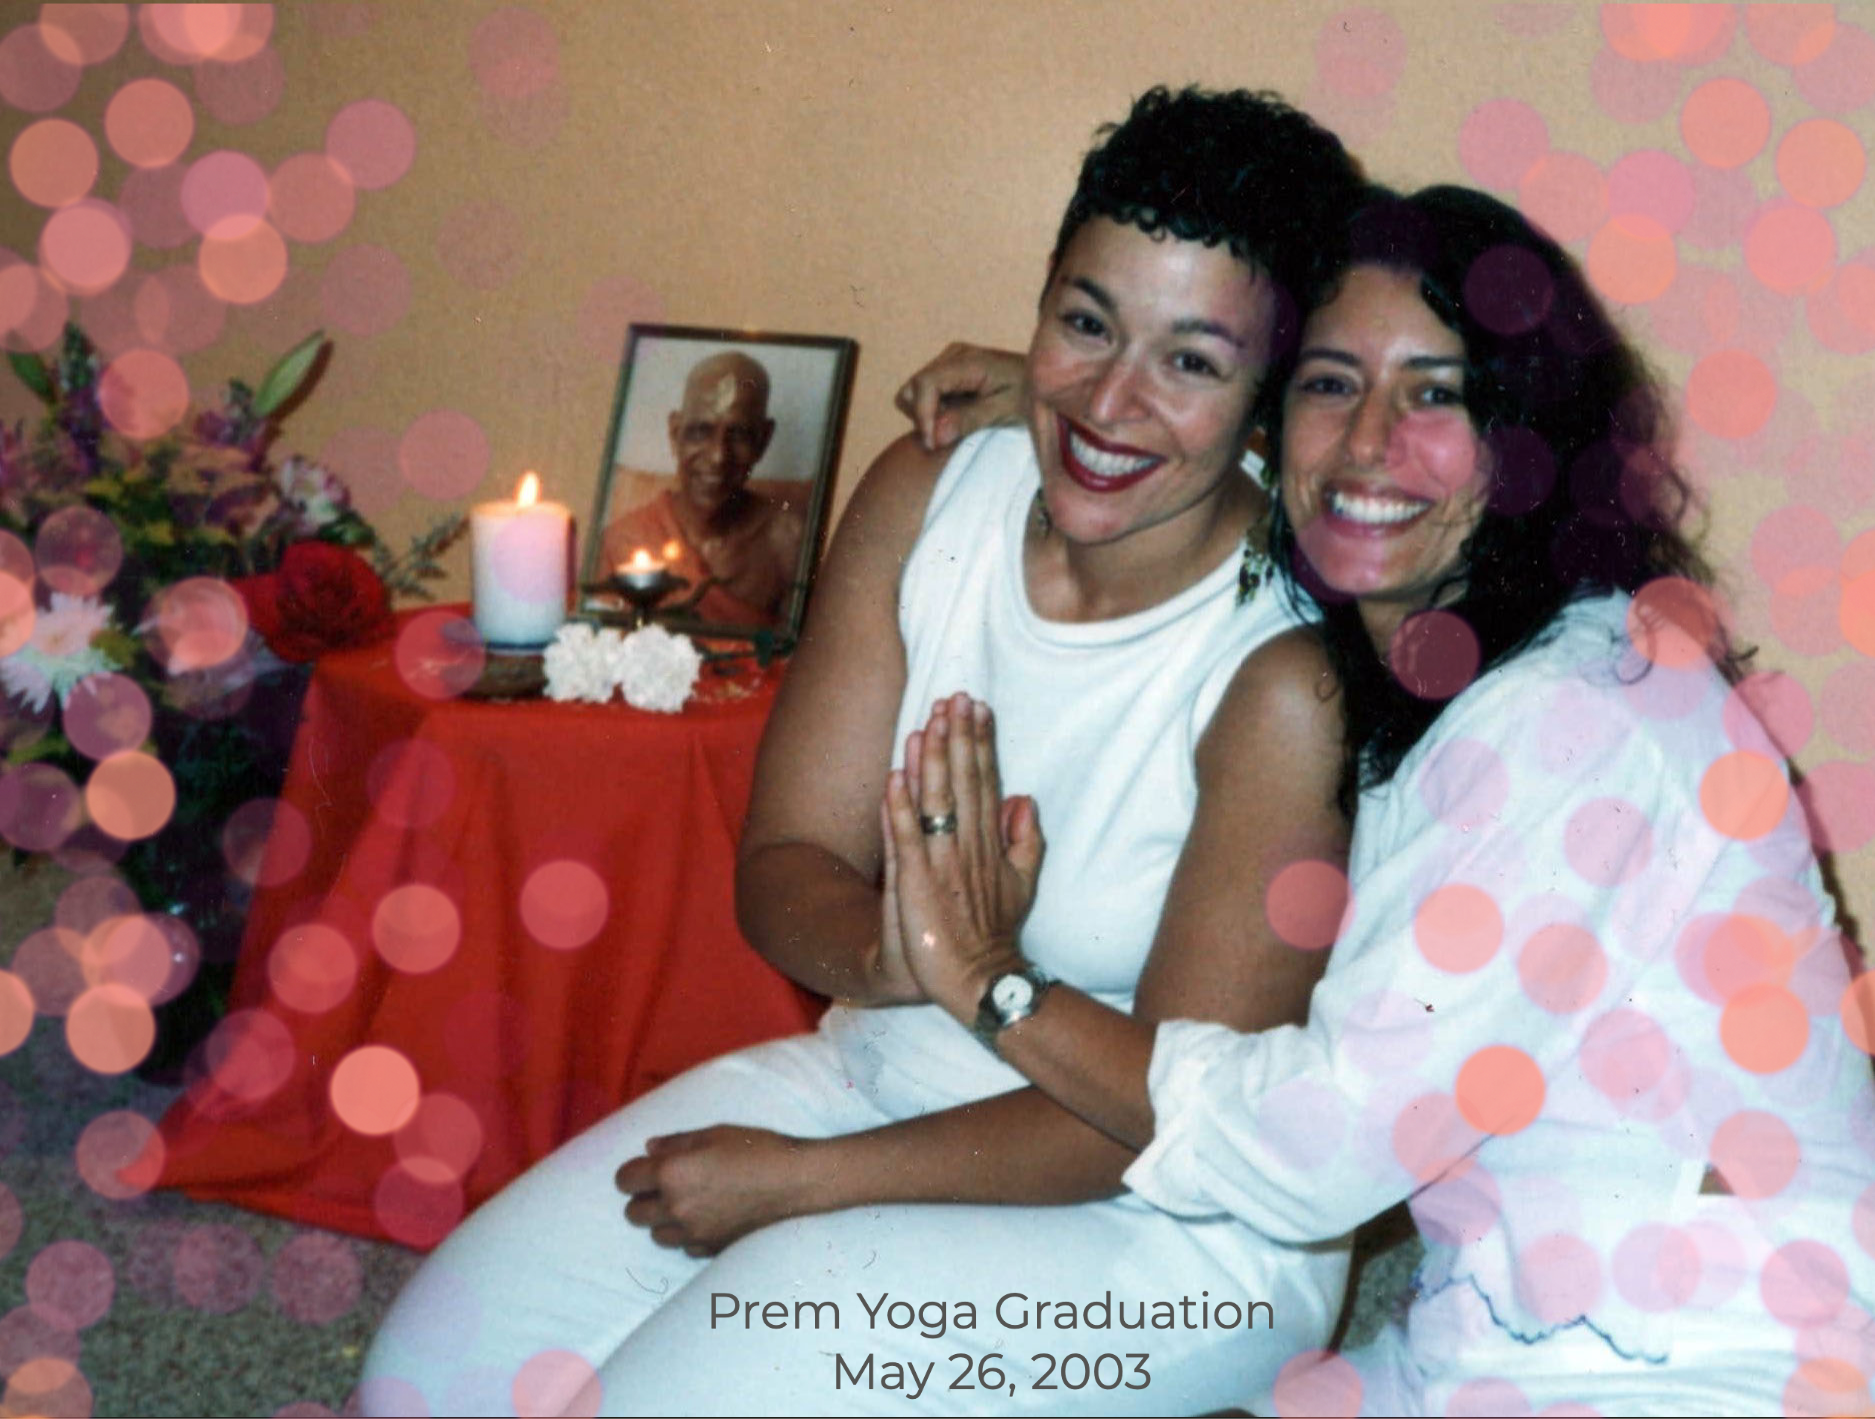 Prem Yoga Graduation May 26, 2003